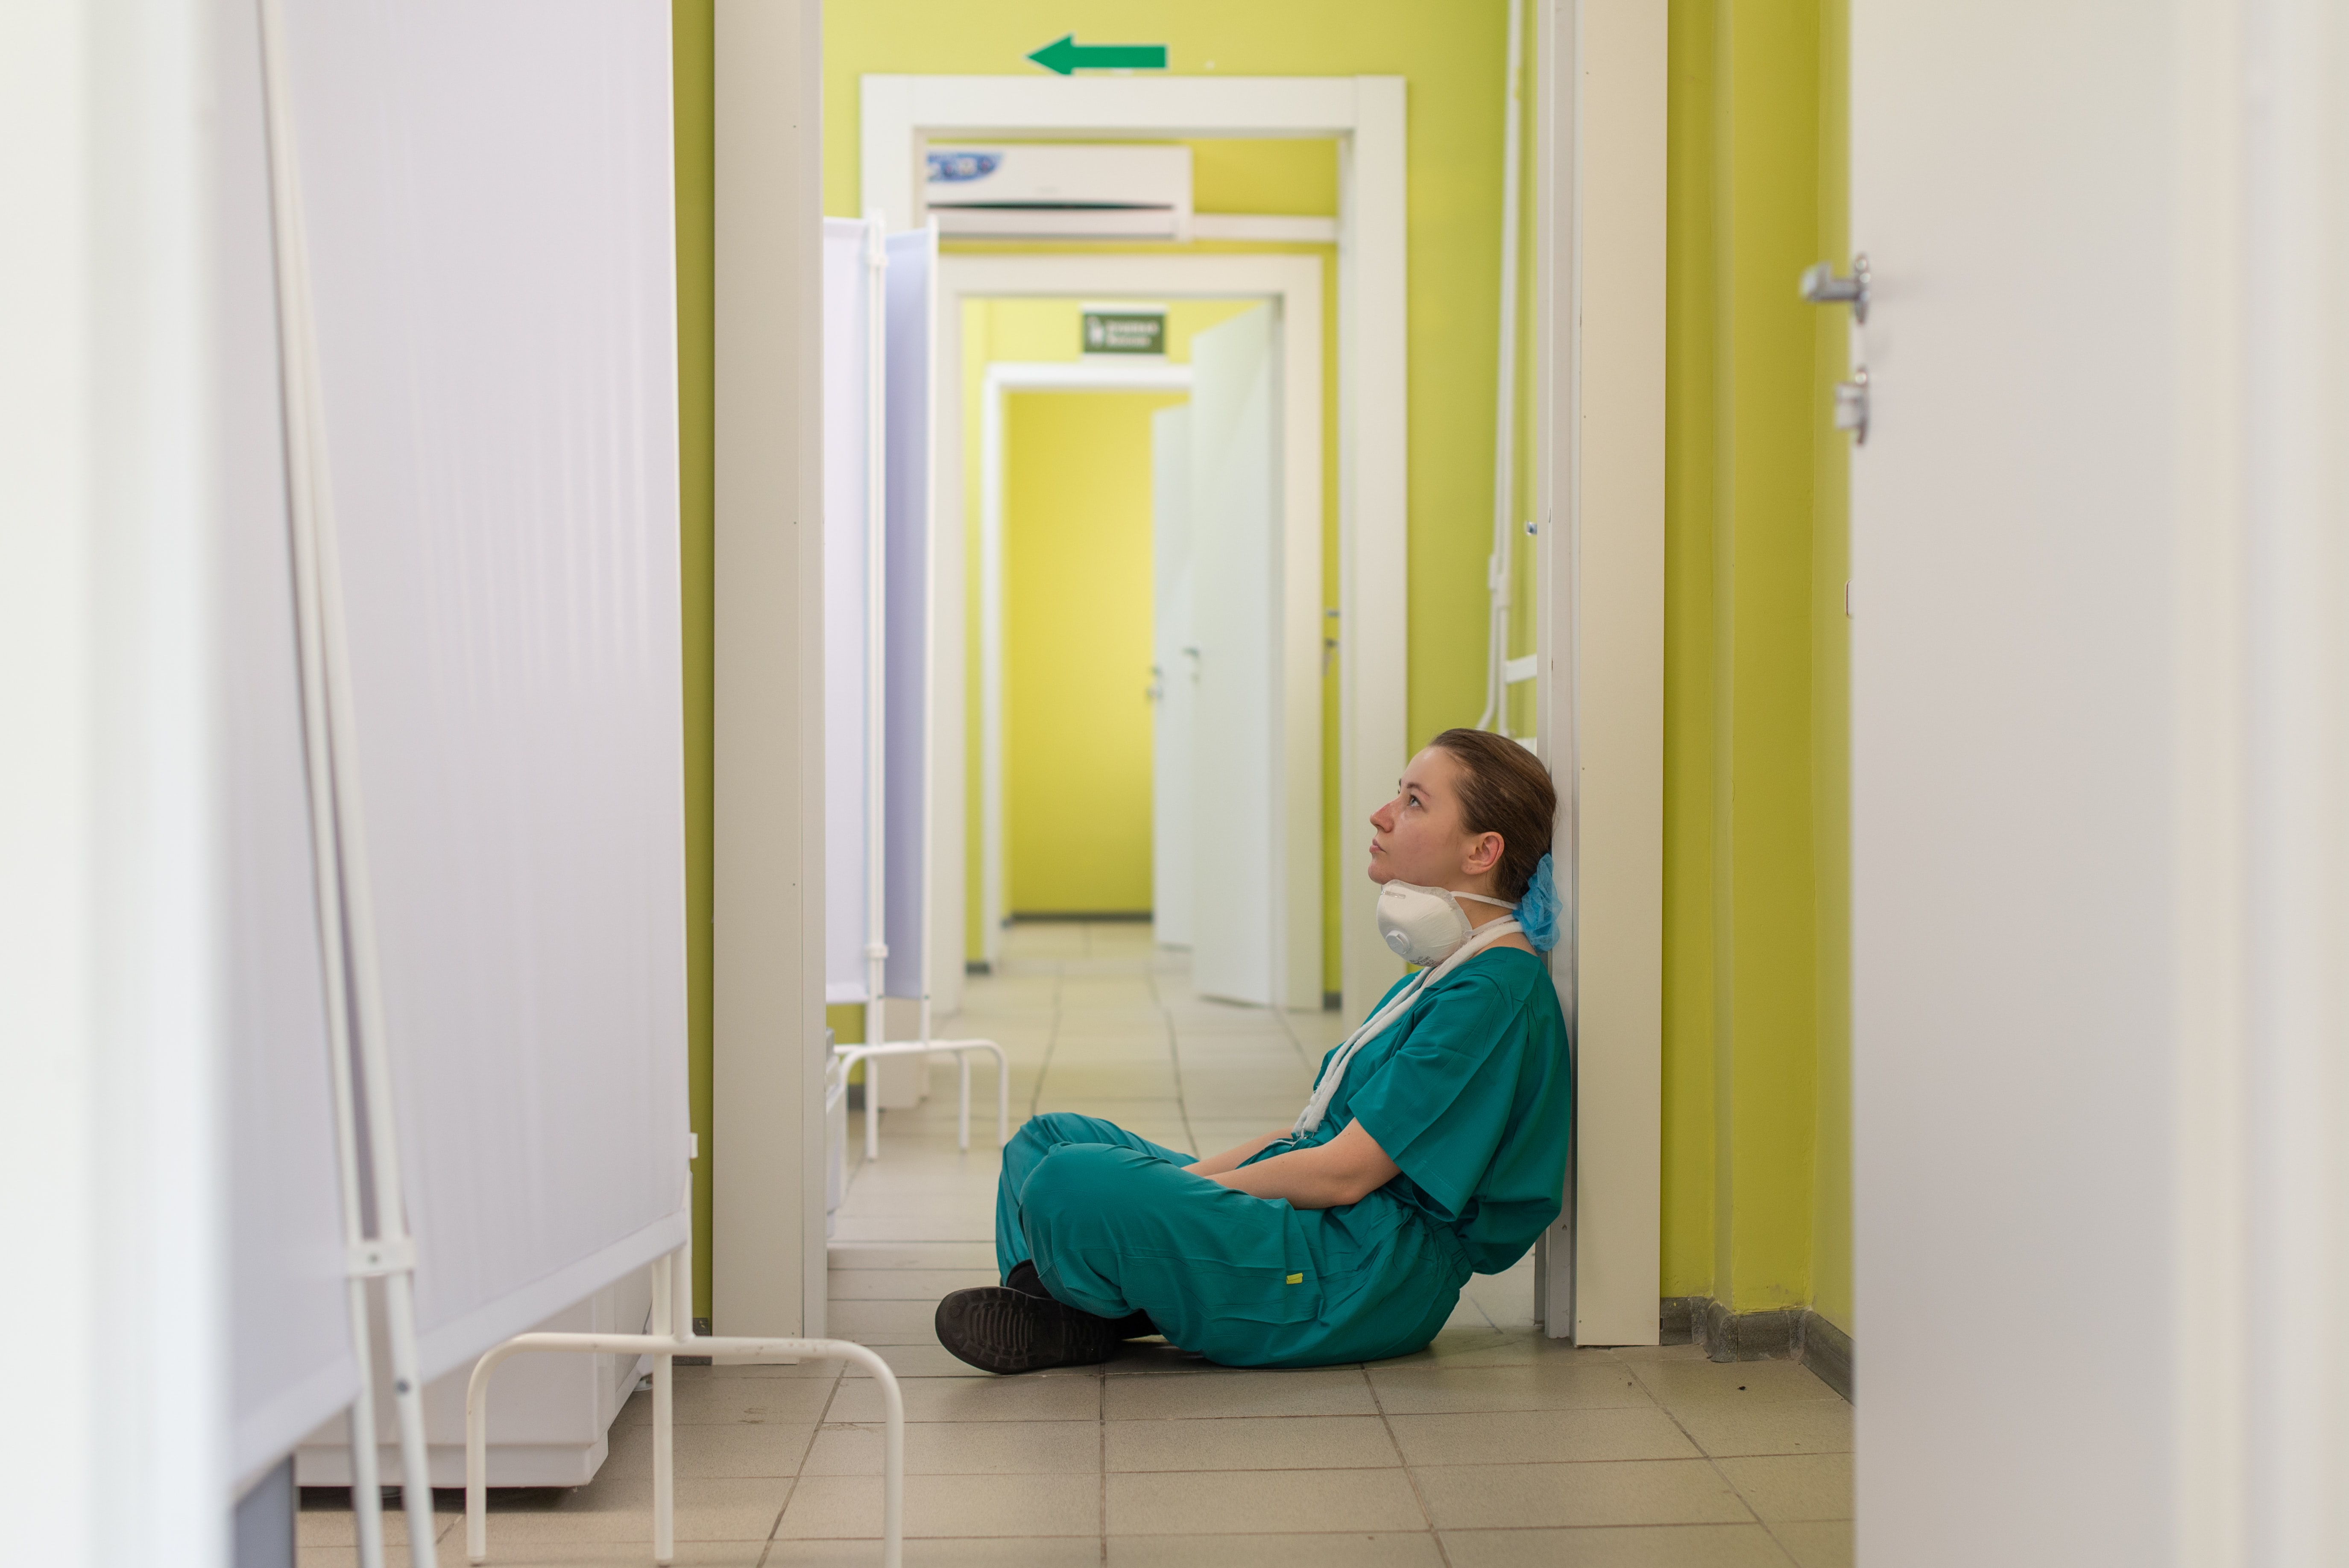 Eine junge Pflegerin sitzt in einem Gang am Boden, an einen Türrahmen angelehnt. Sie sieht müde aus. Bebildert wird ein Artikel zu Pflichtpraktika in der Pflege-Ausbildung.